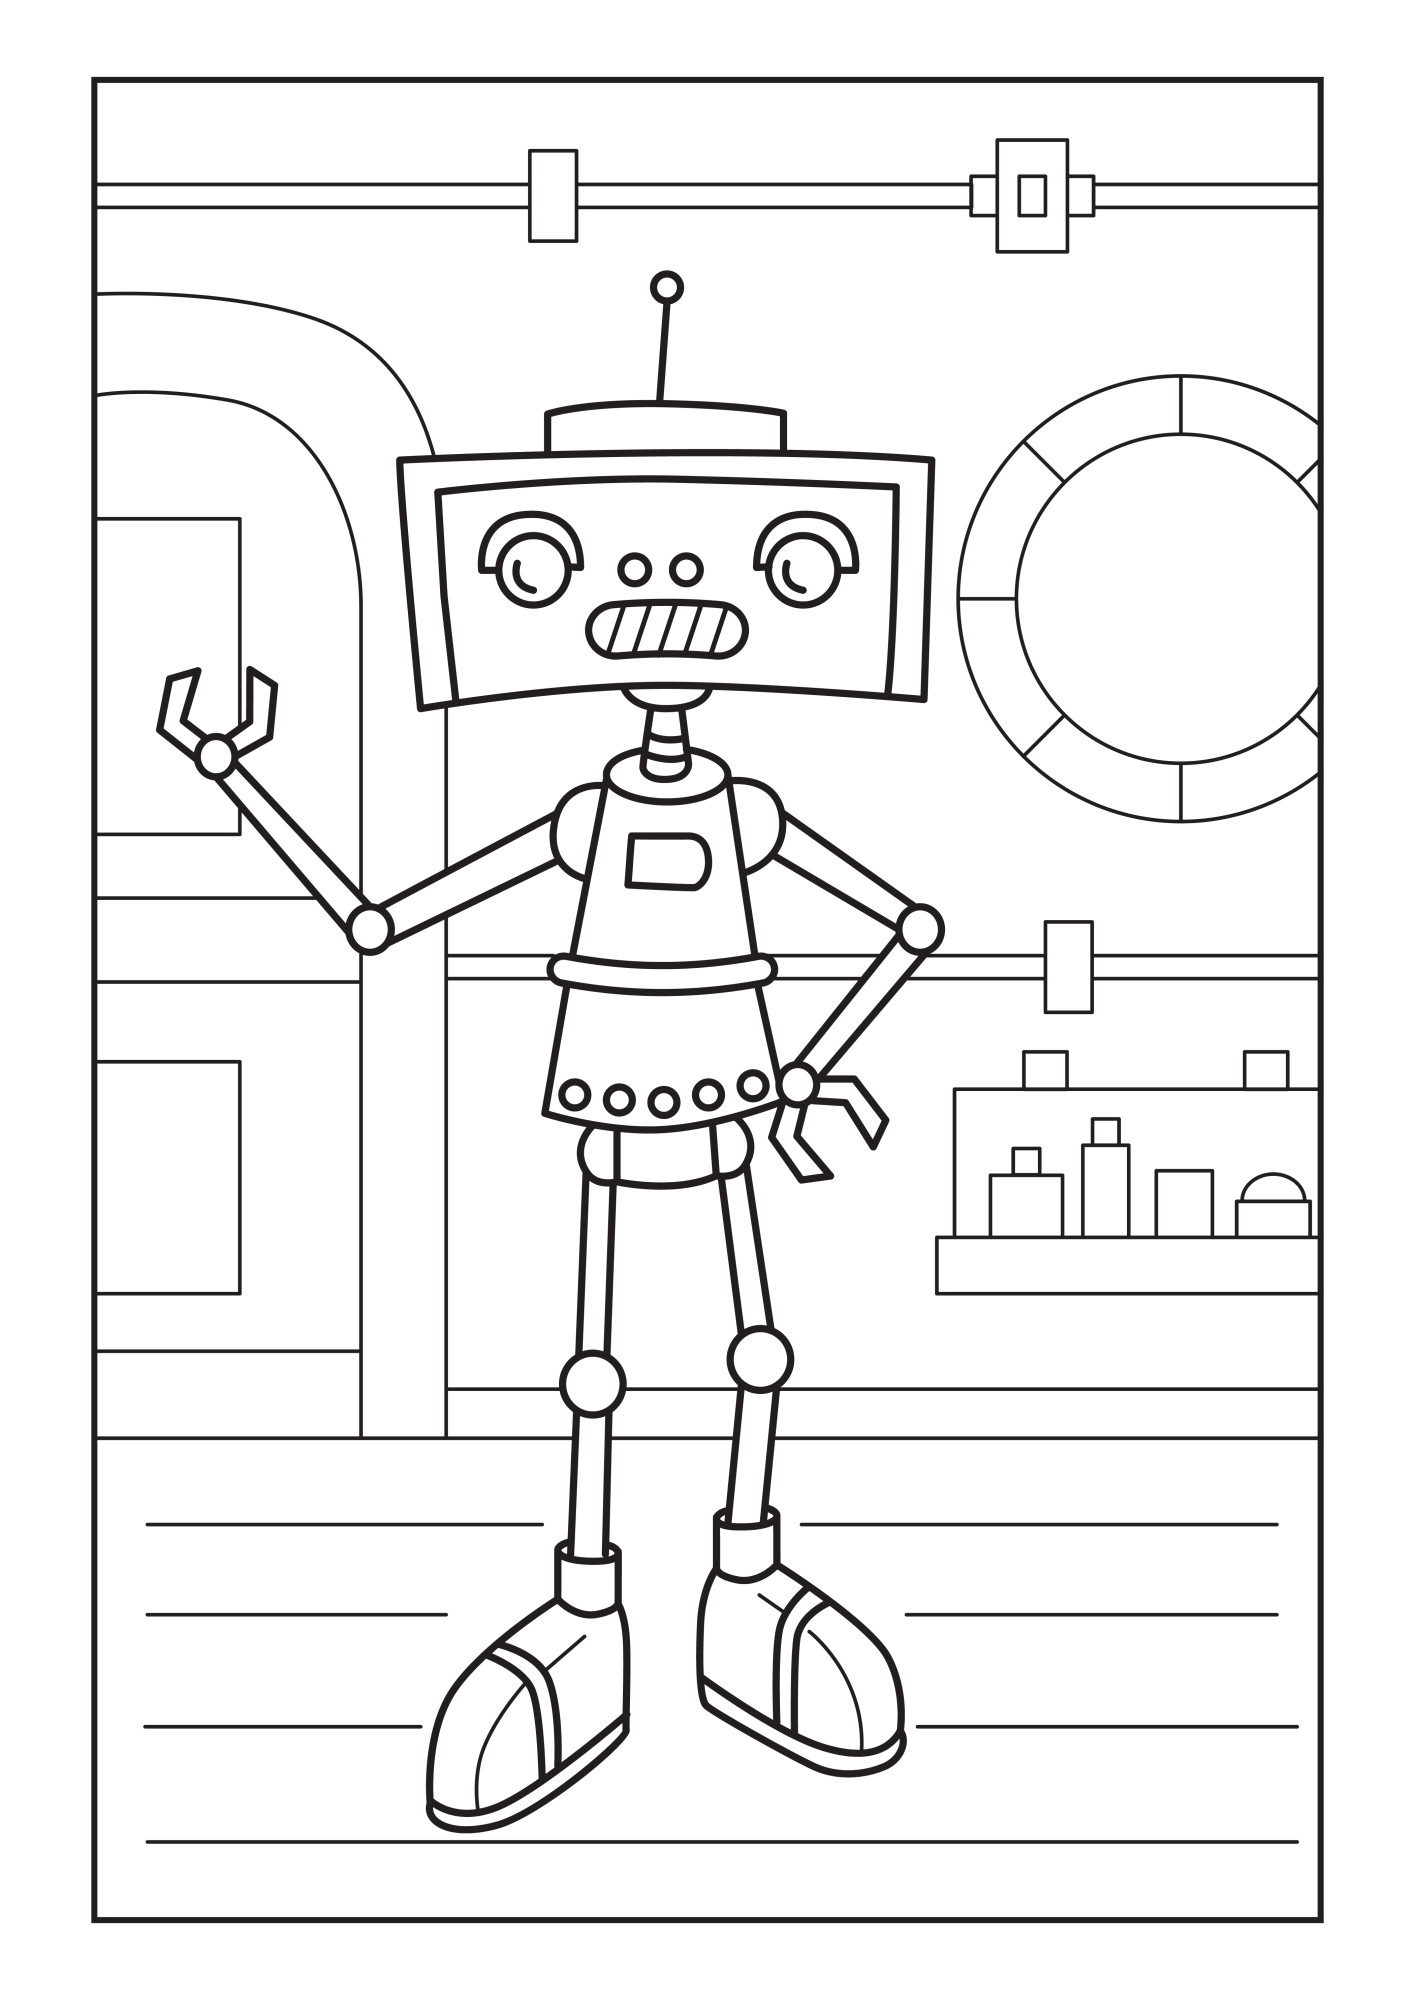 Раскраска для детей: робот механический помощник